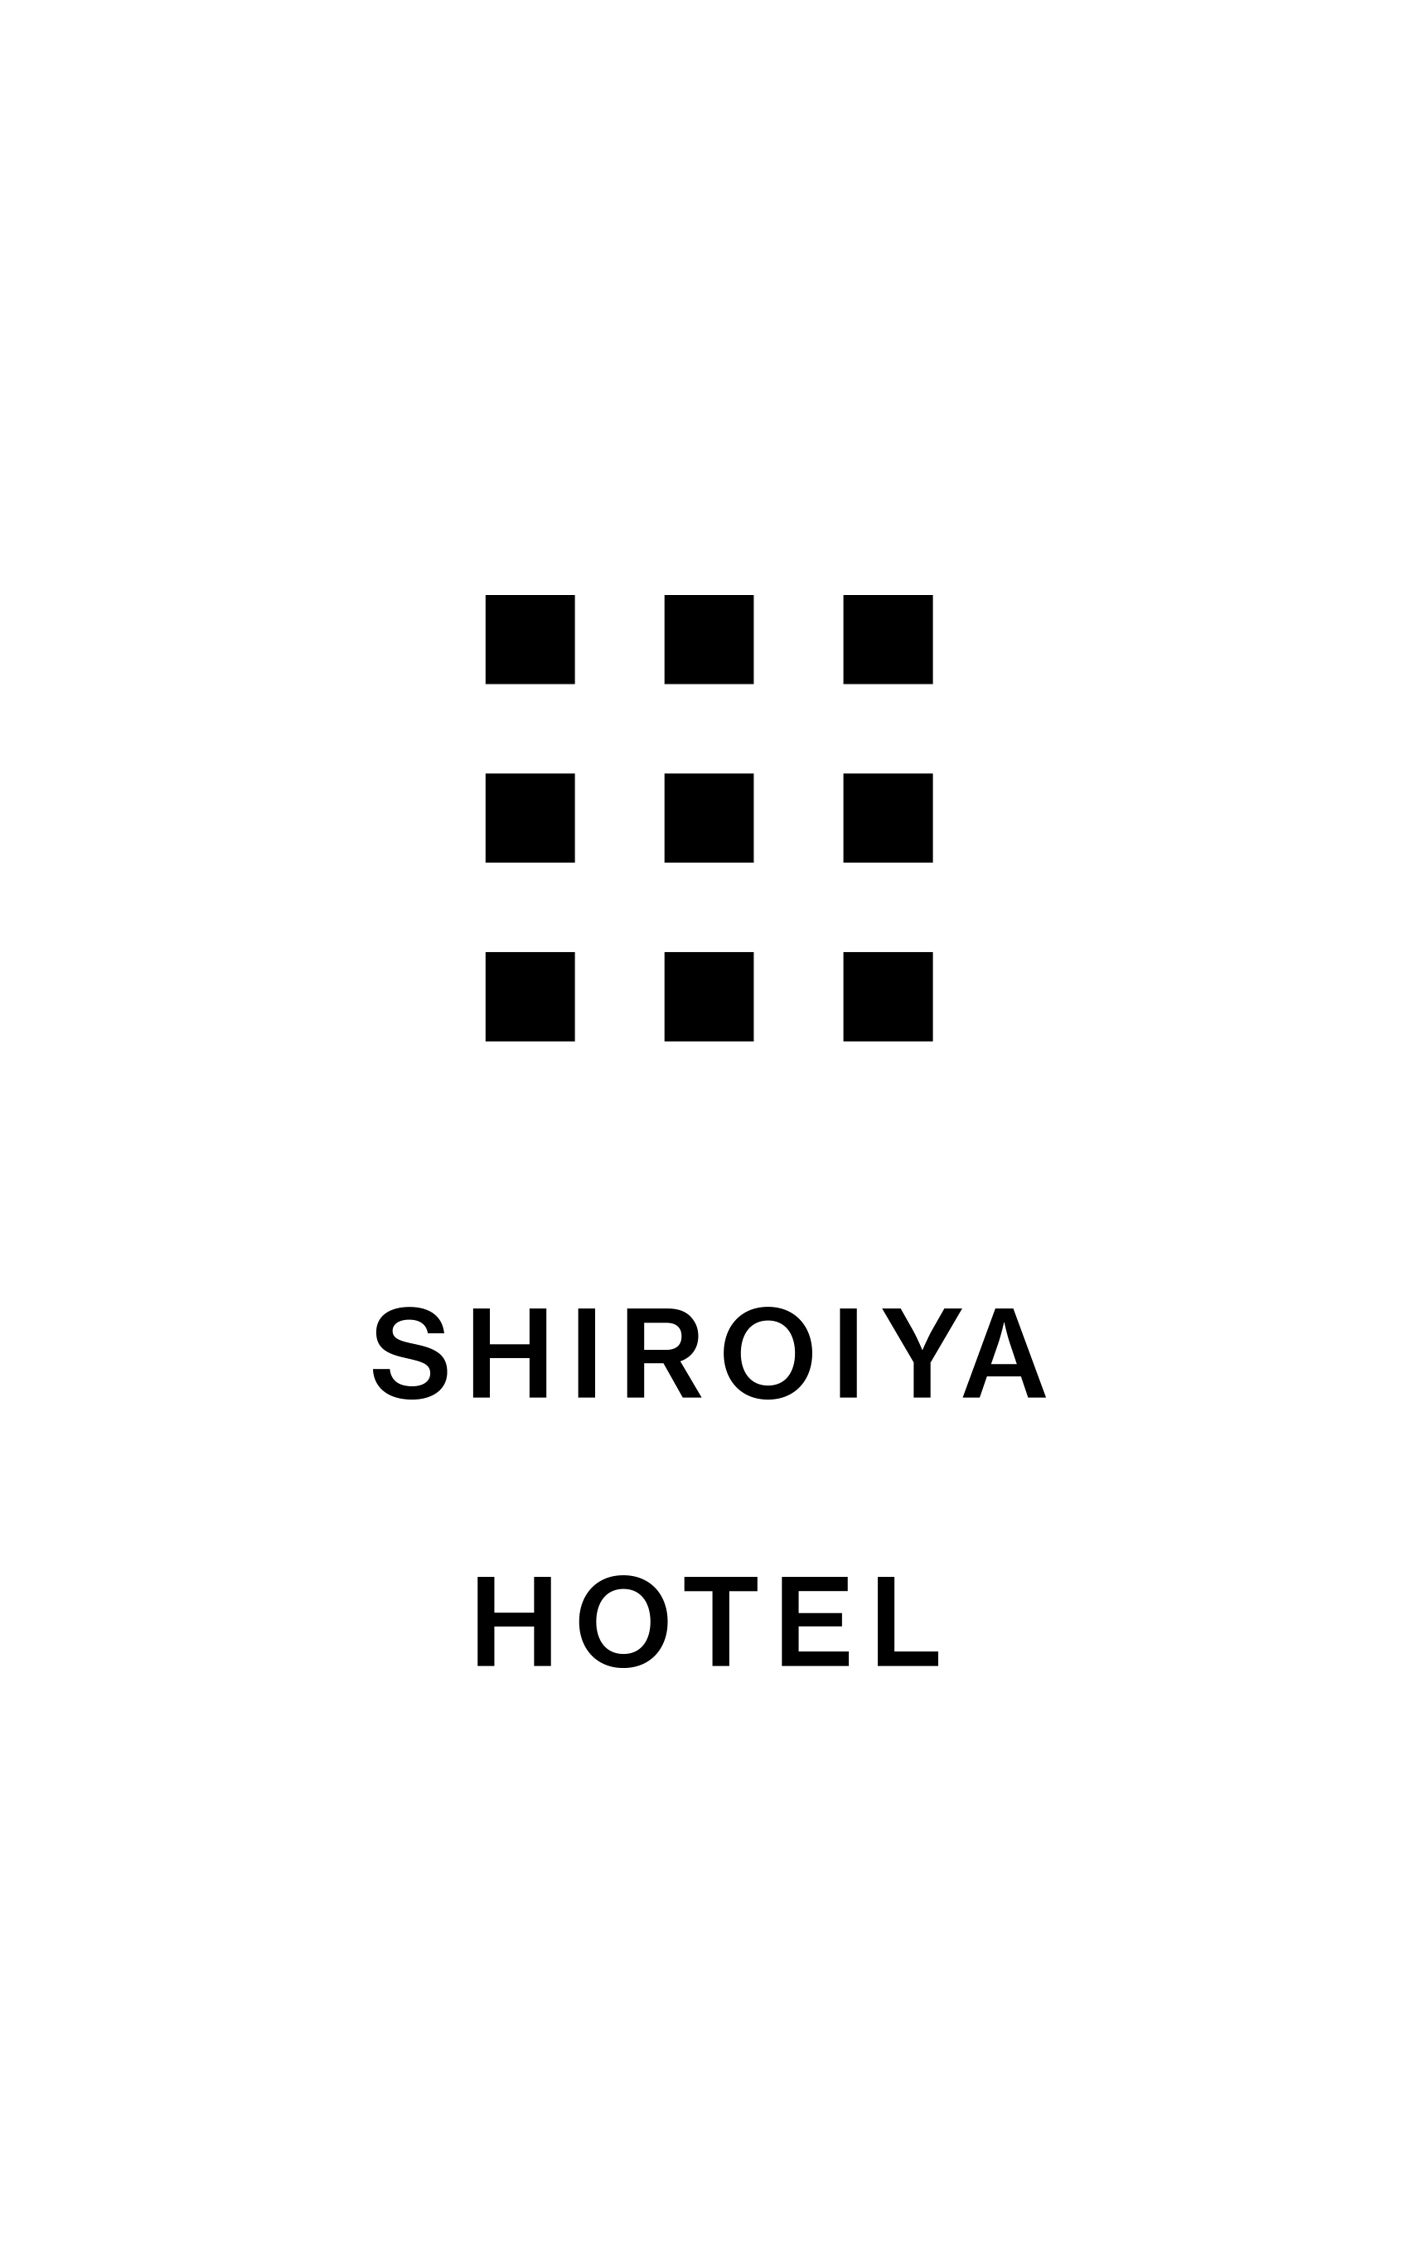 白井屋ホテル 初の書籍出版「Shiroiya Hotel Giving Anew」 | 白井屋